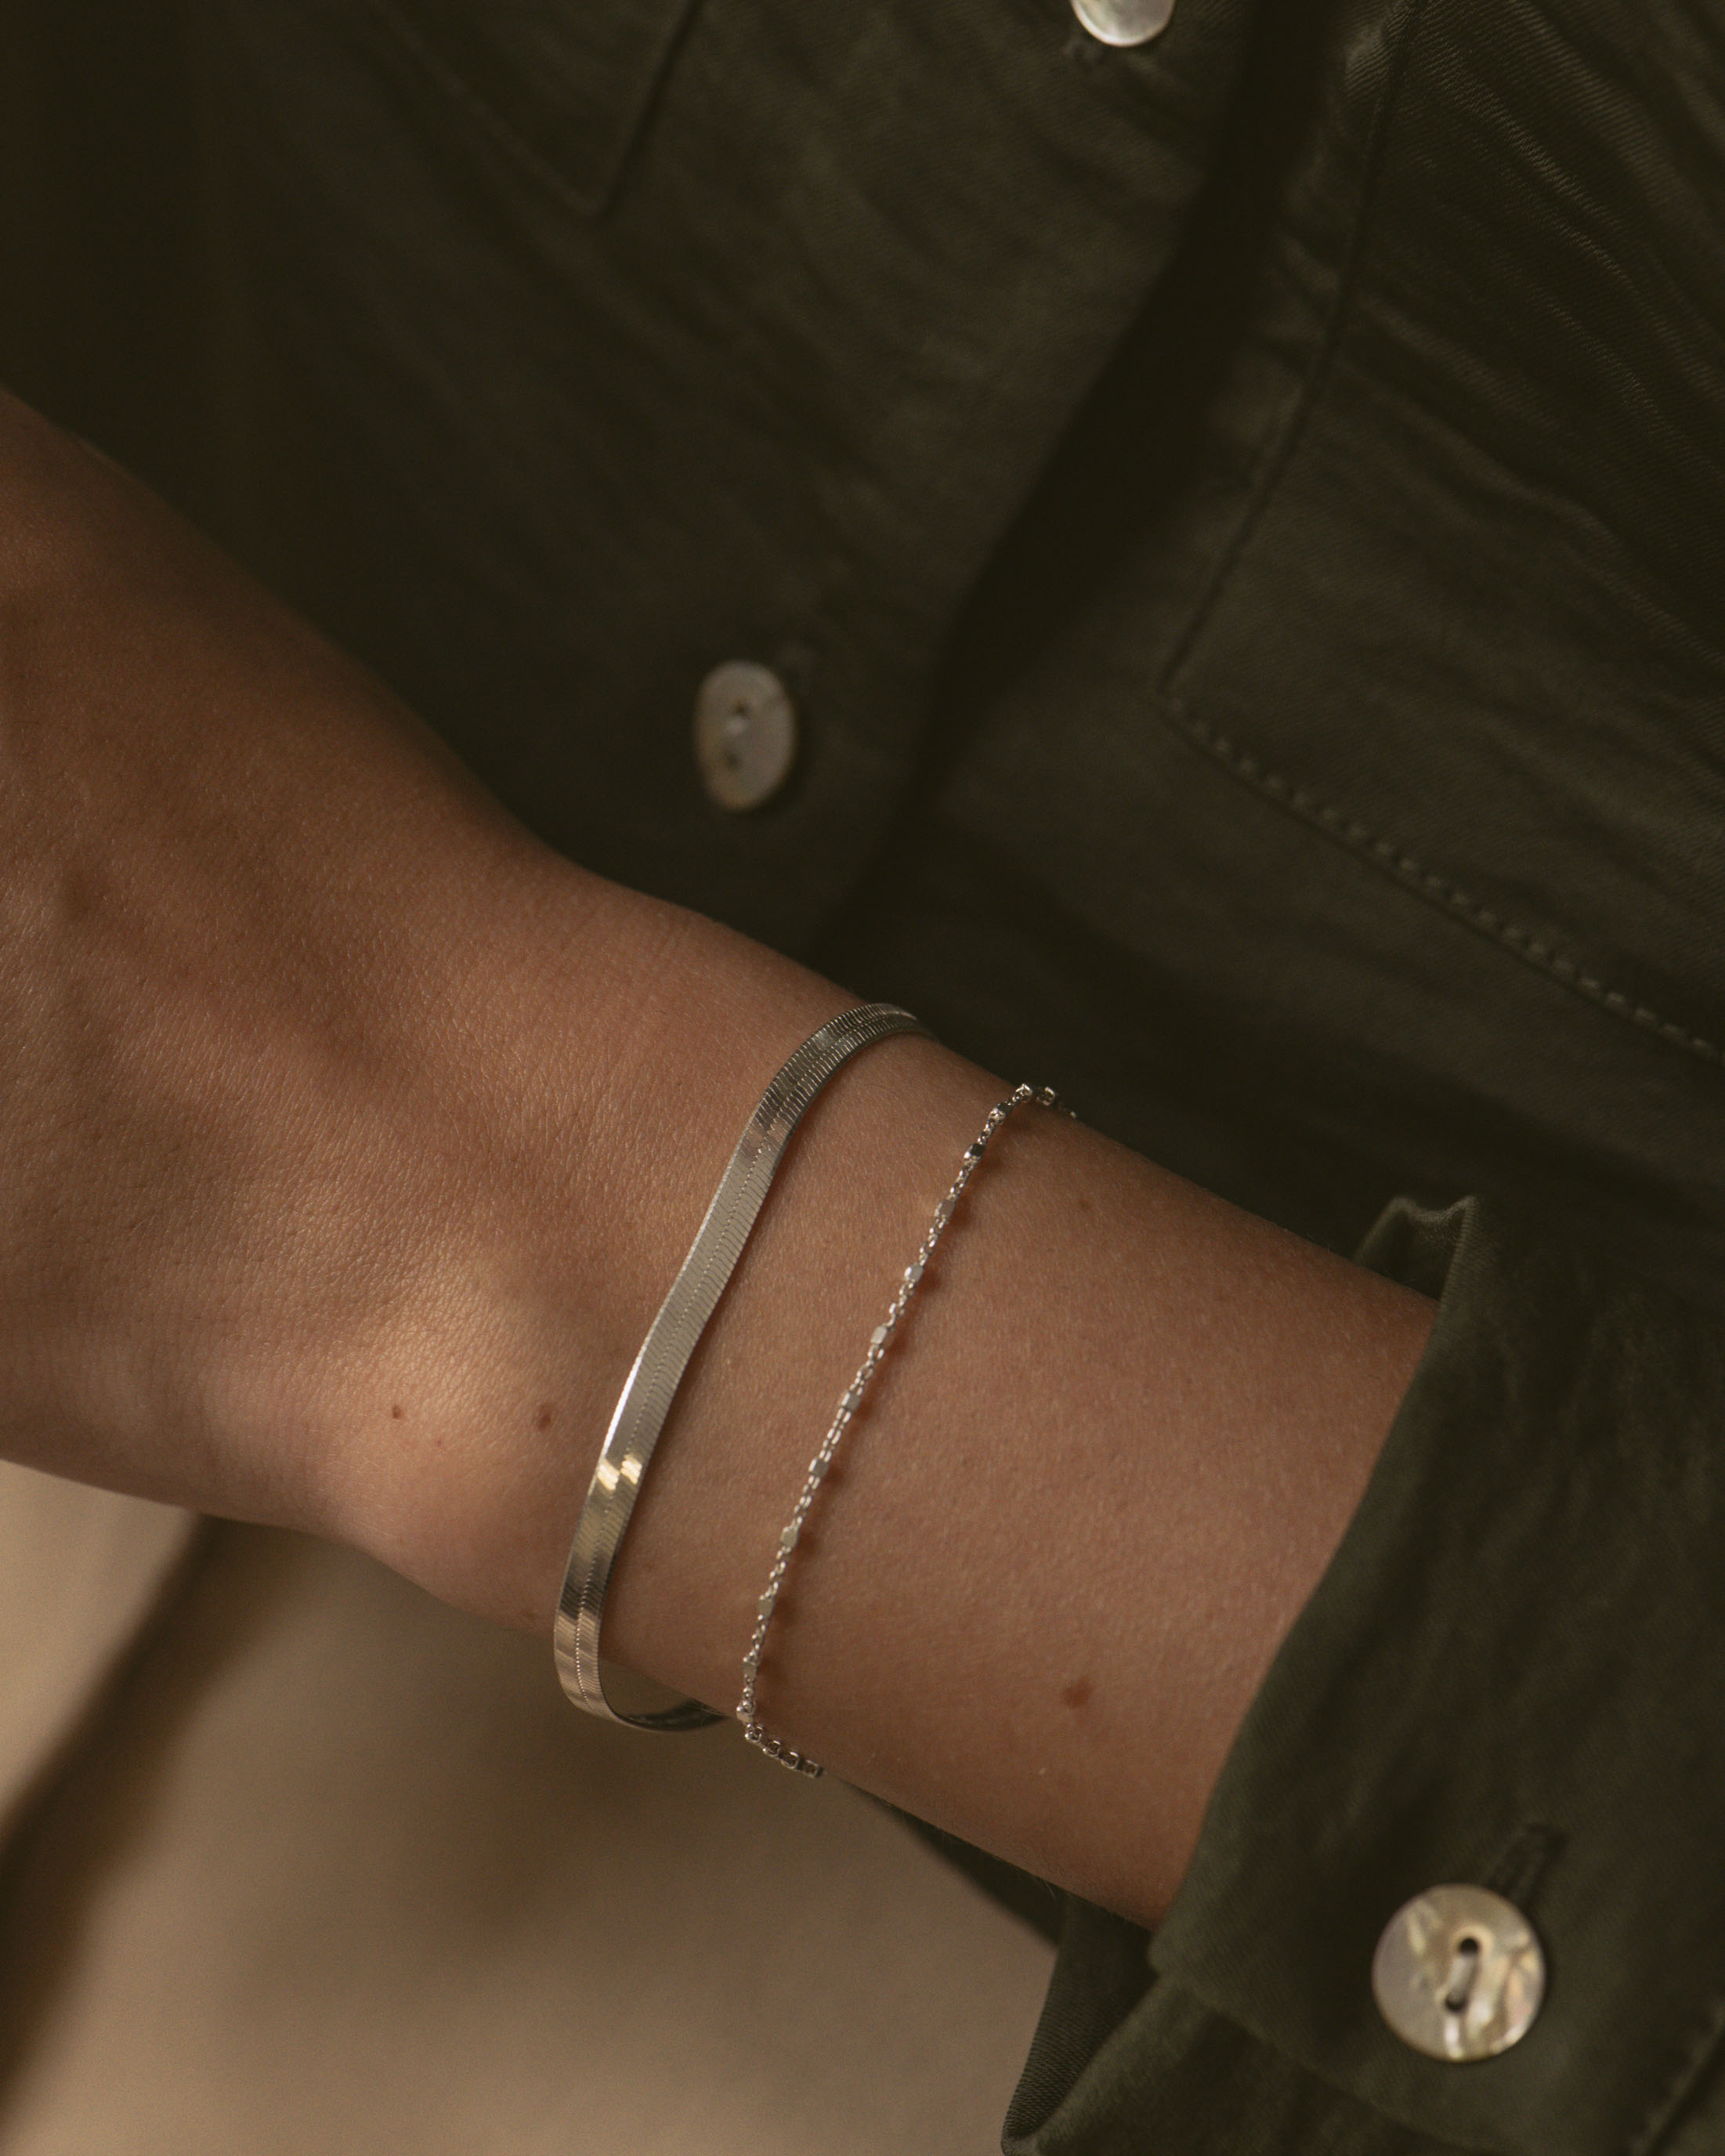 Compo de bracelets durables made in France, composée d'un bracelet en chaîne plate et d'un bracelet en chaîne fine avec des petites mailles carrées, en argent massif 925. 